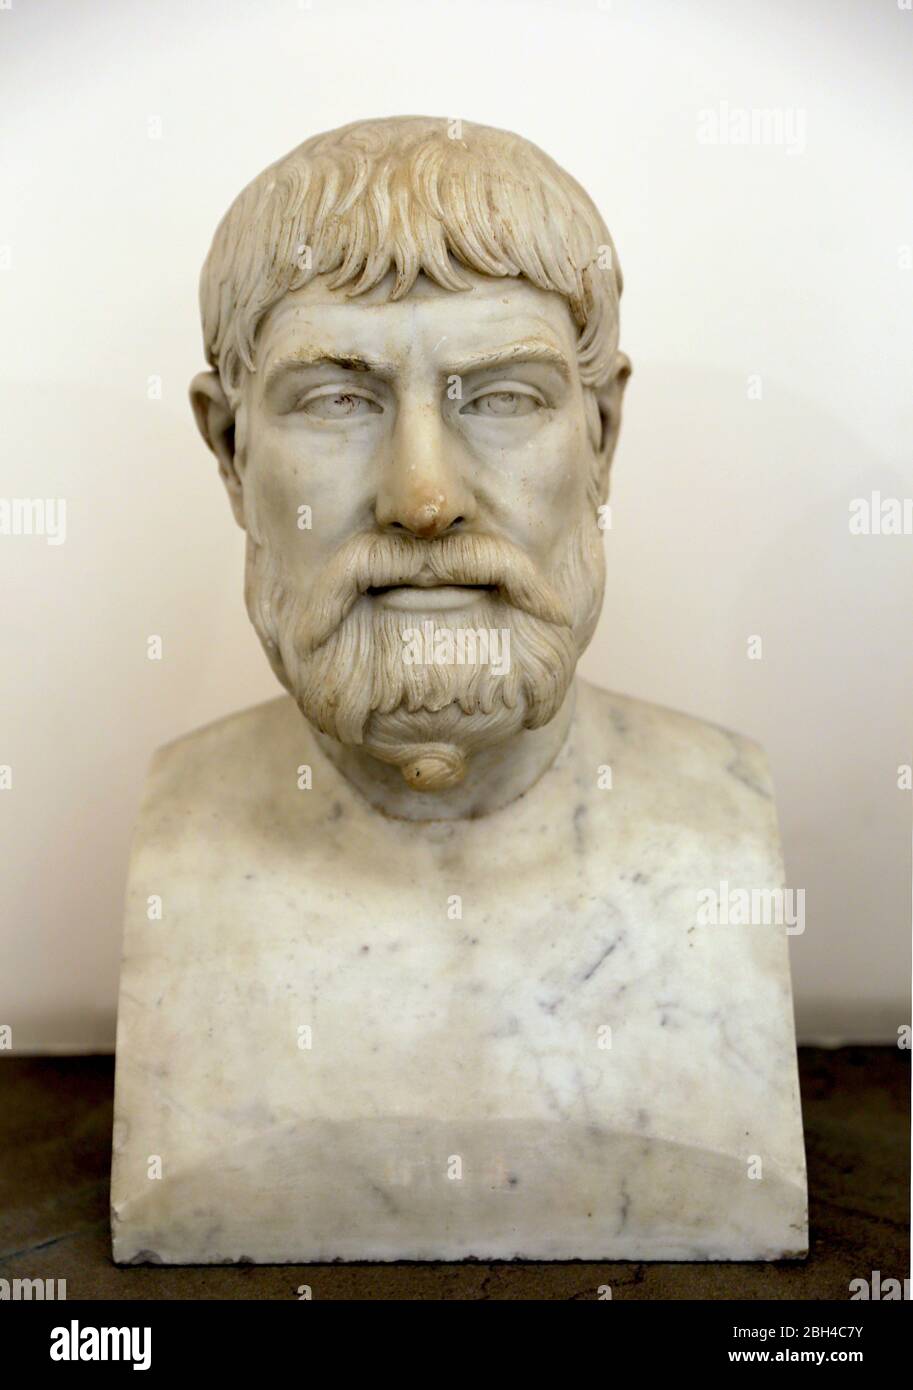 Pindar (Pindaro) poeta lirico greco (518-438 a.C.) copia romana (130 d.C.) di un originale greco. Marmo. Museo Archeologico di Napoli. Foto Stock